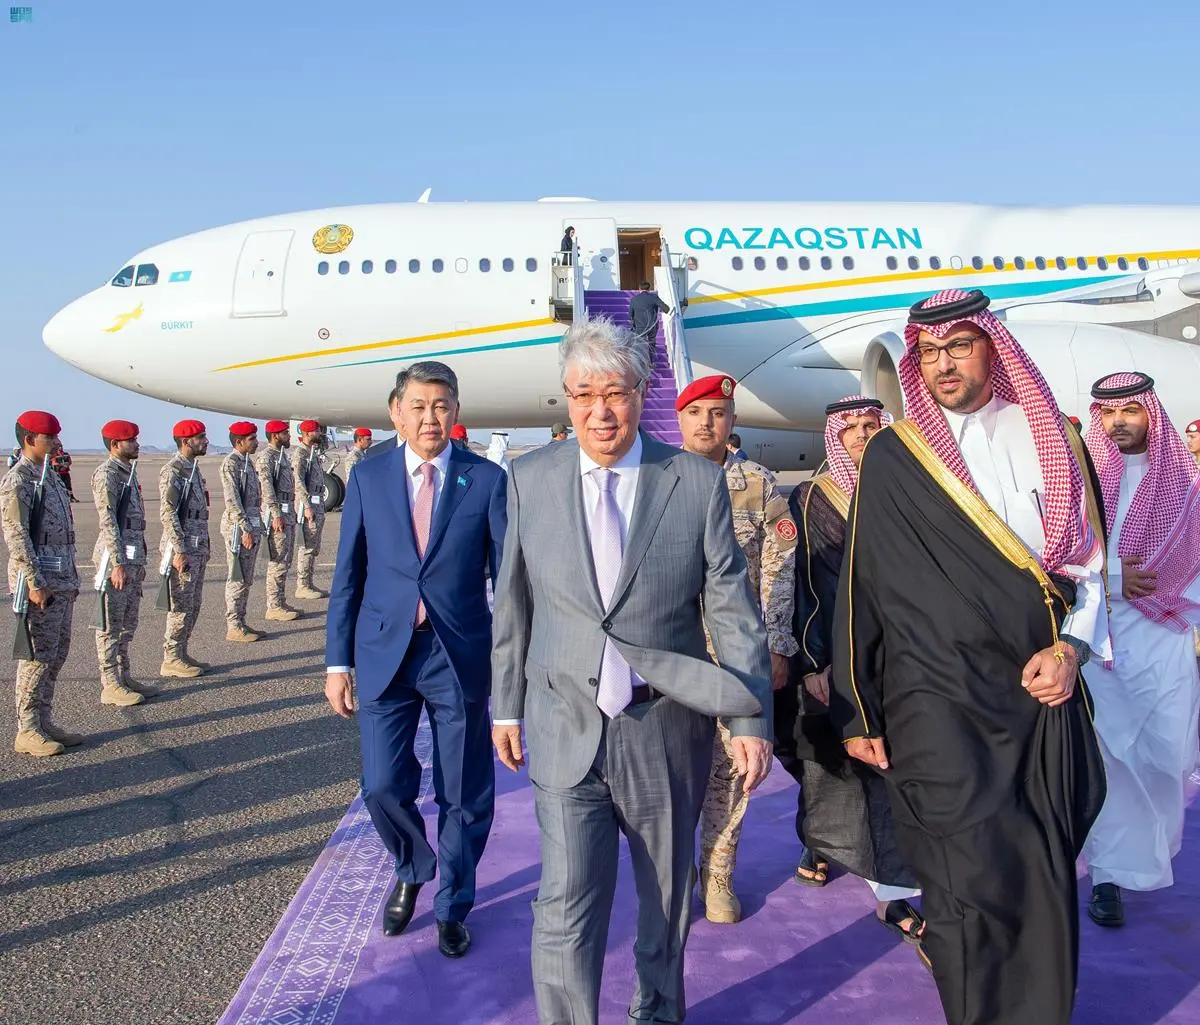 رئيس كازاخستان يصل المدينة المنورة لزيارة المسجد النبوي